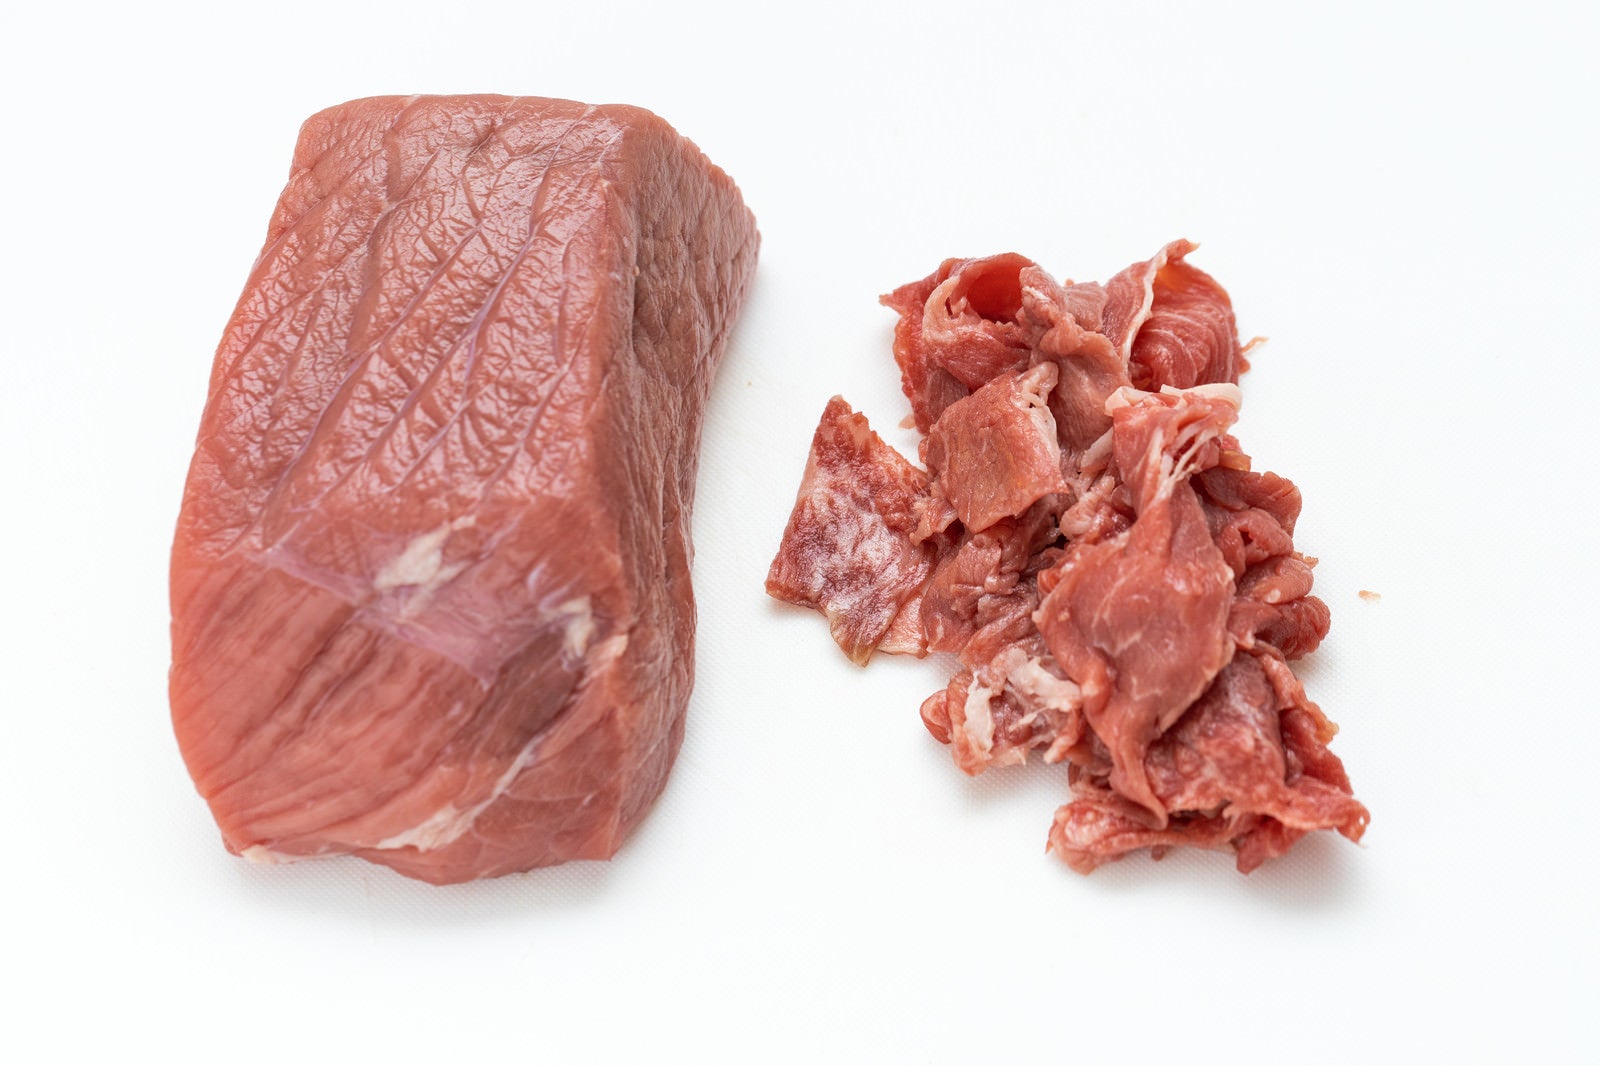 「いい肉の日だからブロック肉と細切れ肉を買いました」の写真